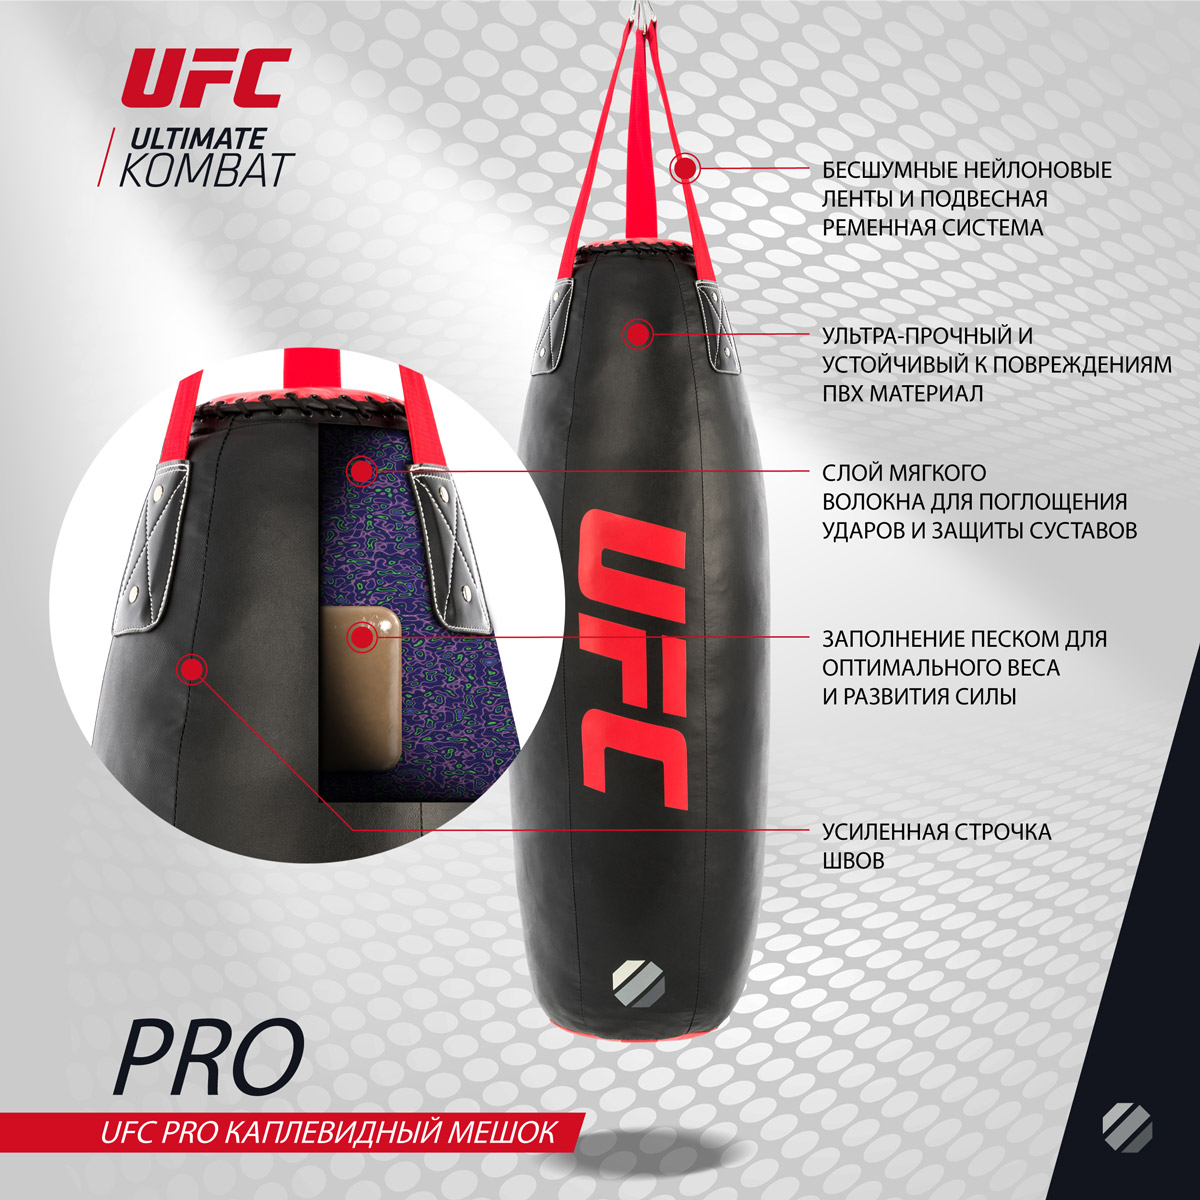 UFC Каплевидный мешок 32 кг с наполнителем 4" "UFC Каплевидный мешок 32 кг с наполнителем 1" "UFC Каплевидный мешок 32 кг с наполнителем 2" "UFC Каплевидный мешок 32 кг с наполнителем